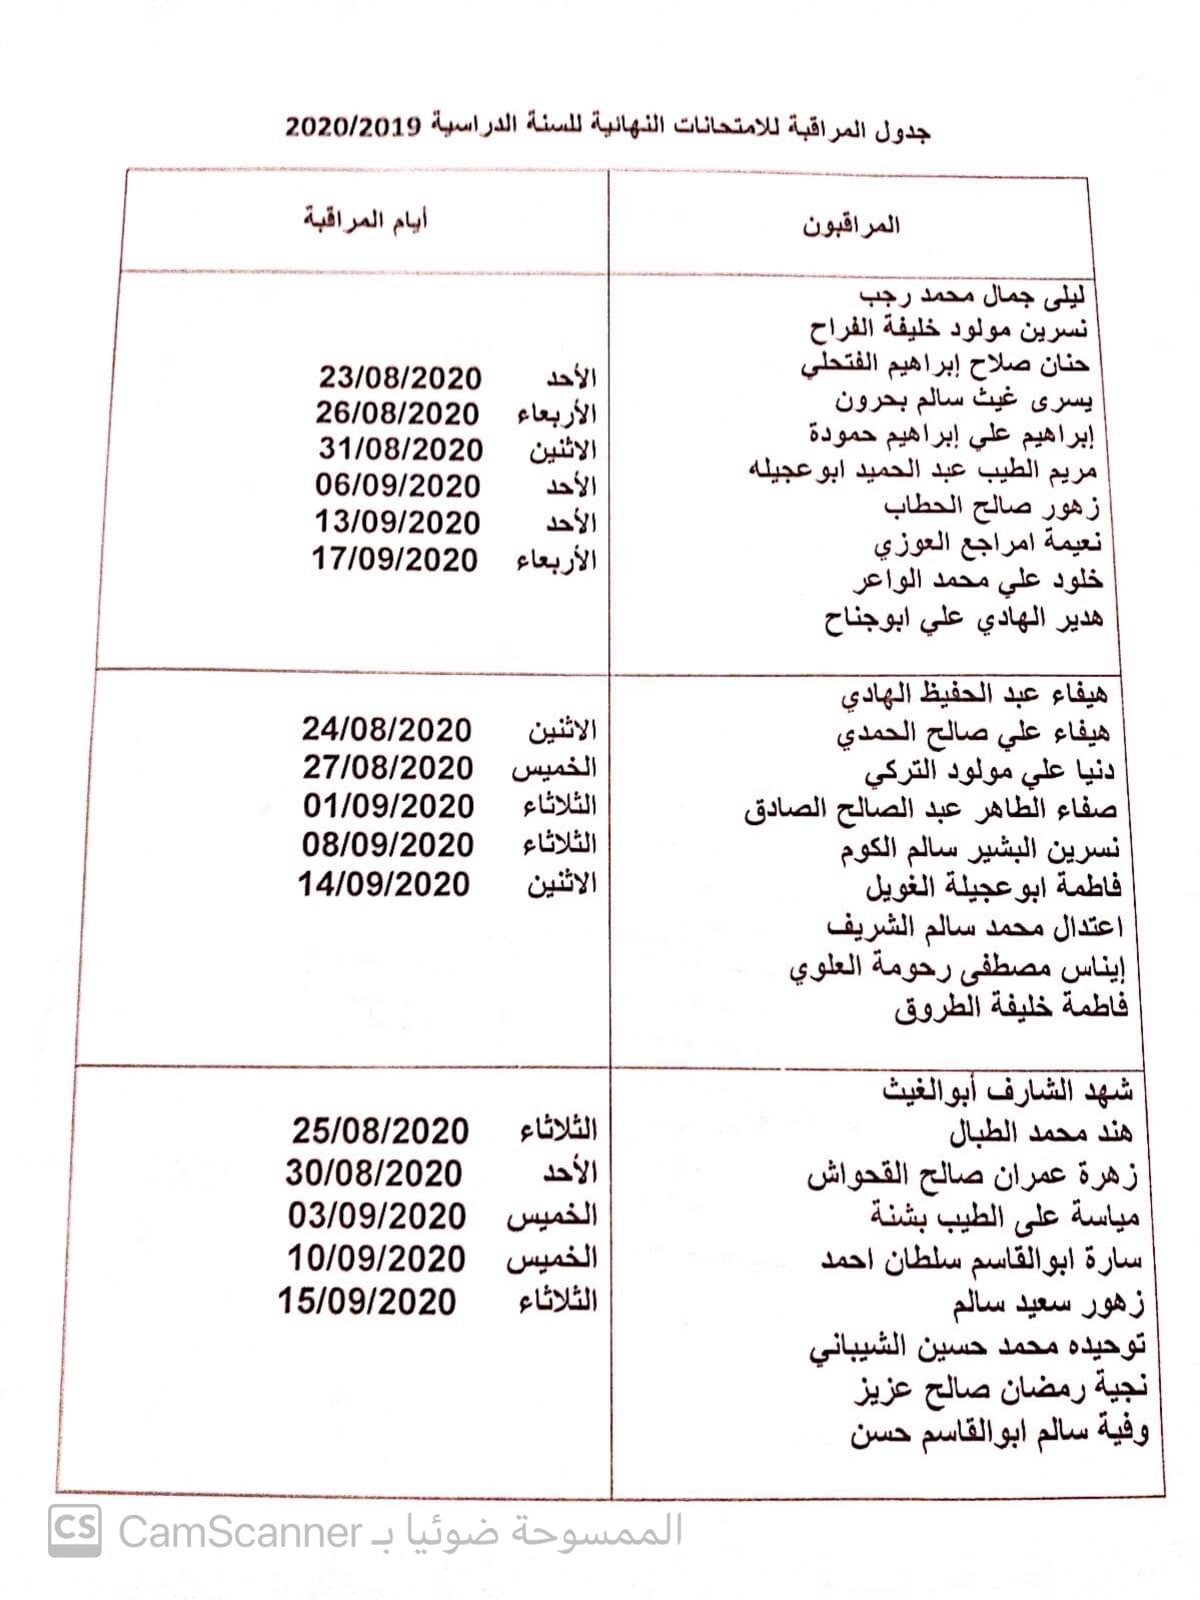 جدول المراقبة للإمتحانات النهائية للعام الجامعي 2020/2019